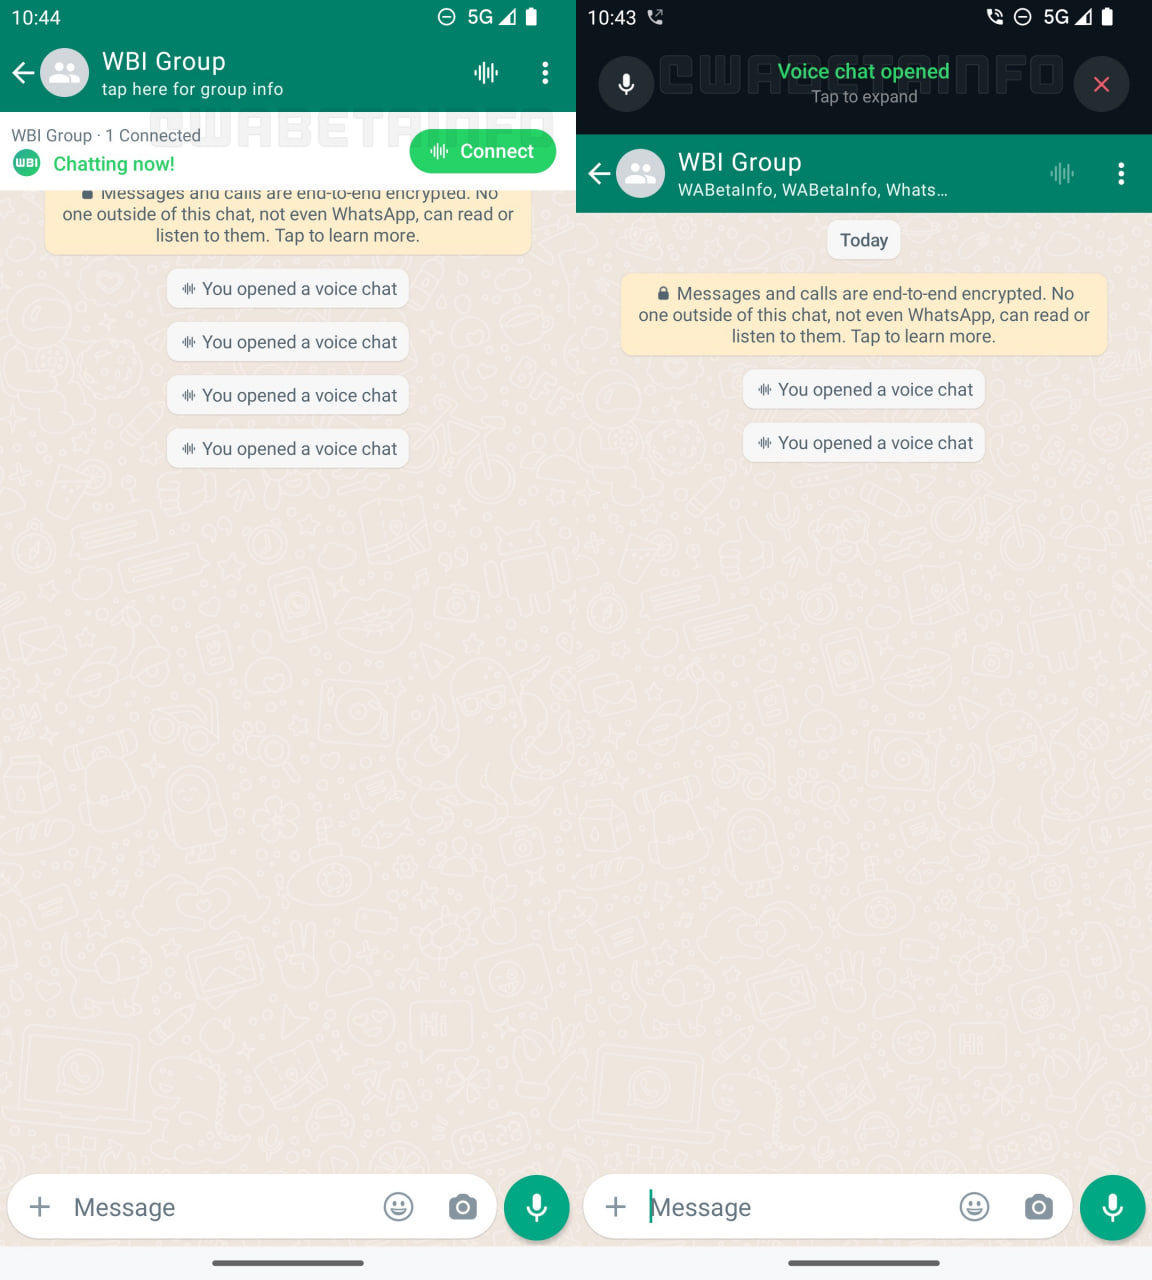 whatsapp beta voice chats img